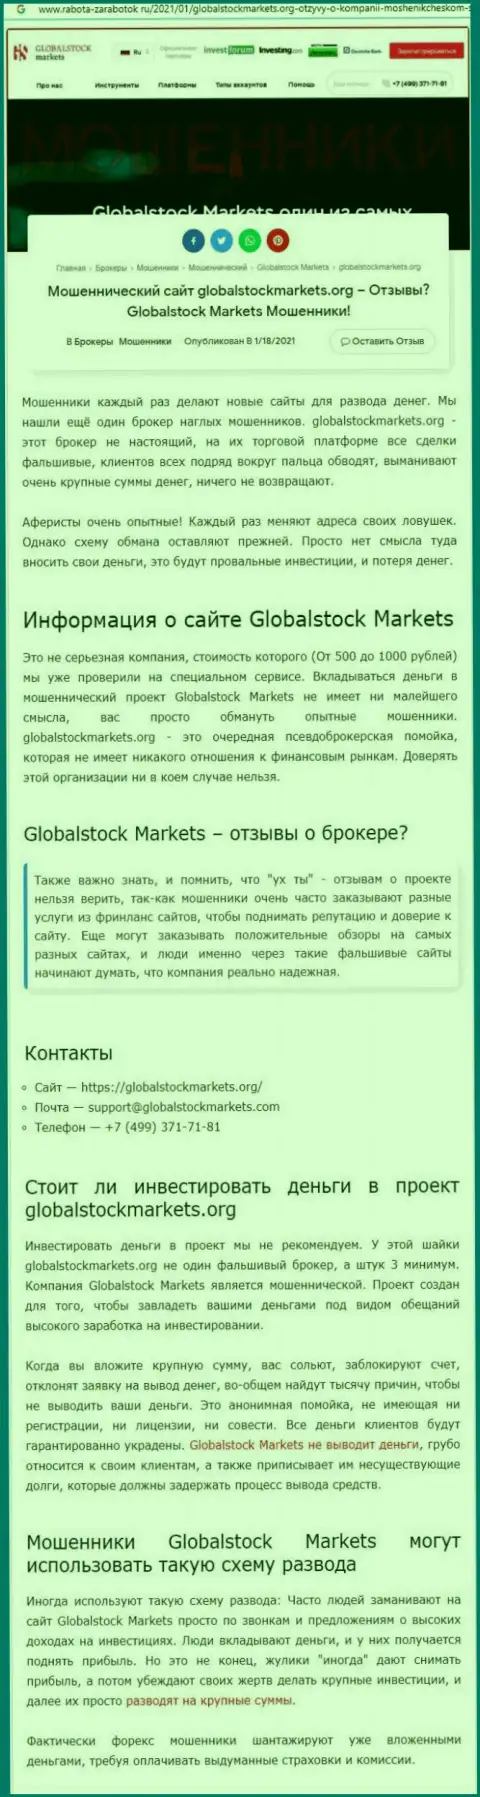 Global Stock Markets - это РАЗВОД НА СРЕДСТВА !!! ОСТОРОЖНО (обзорная статья)